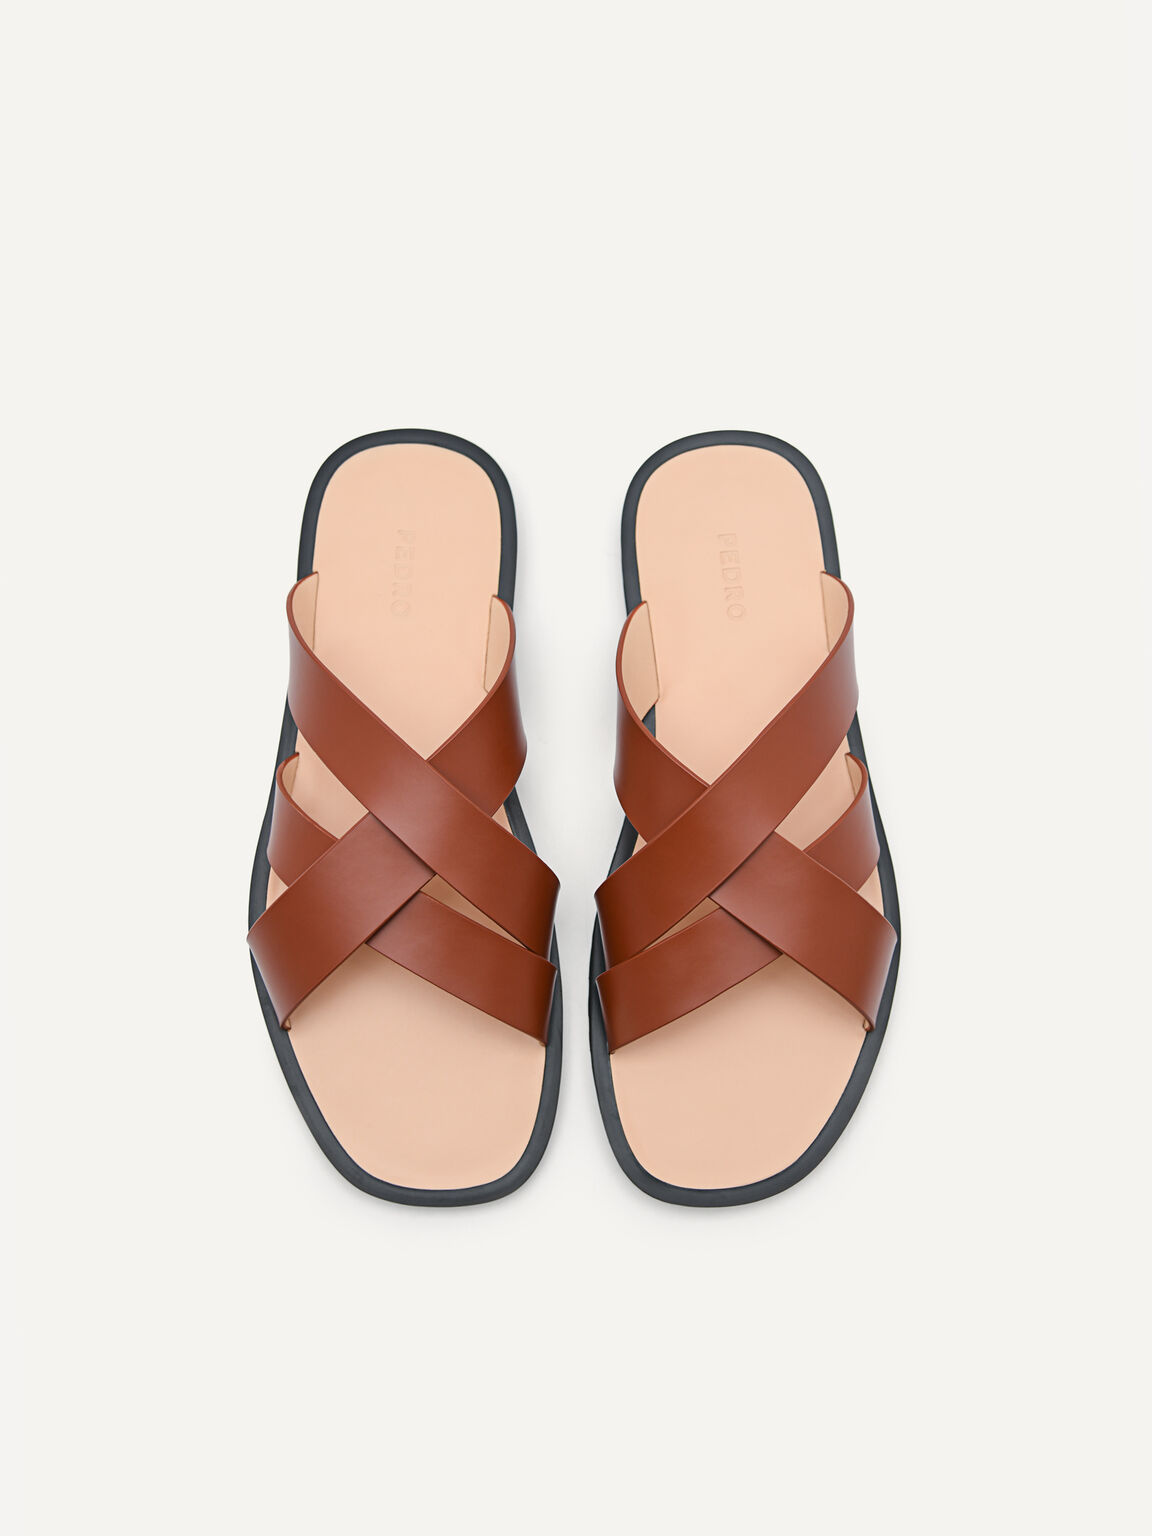 Dune Cross Strap Sandals, Brown, hi-res